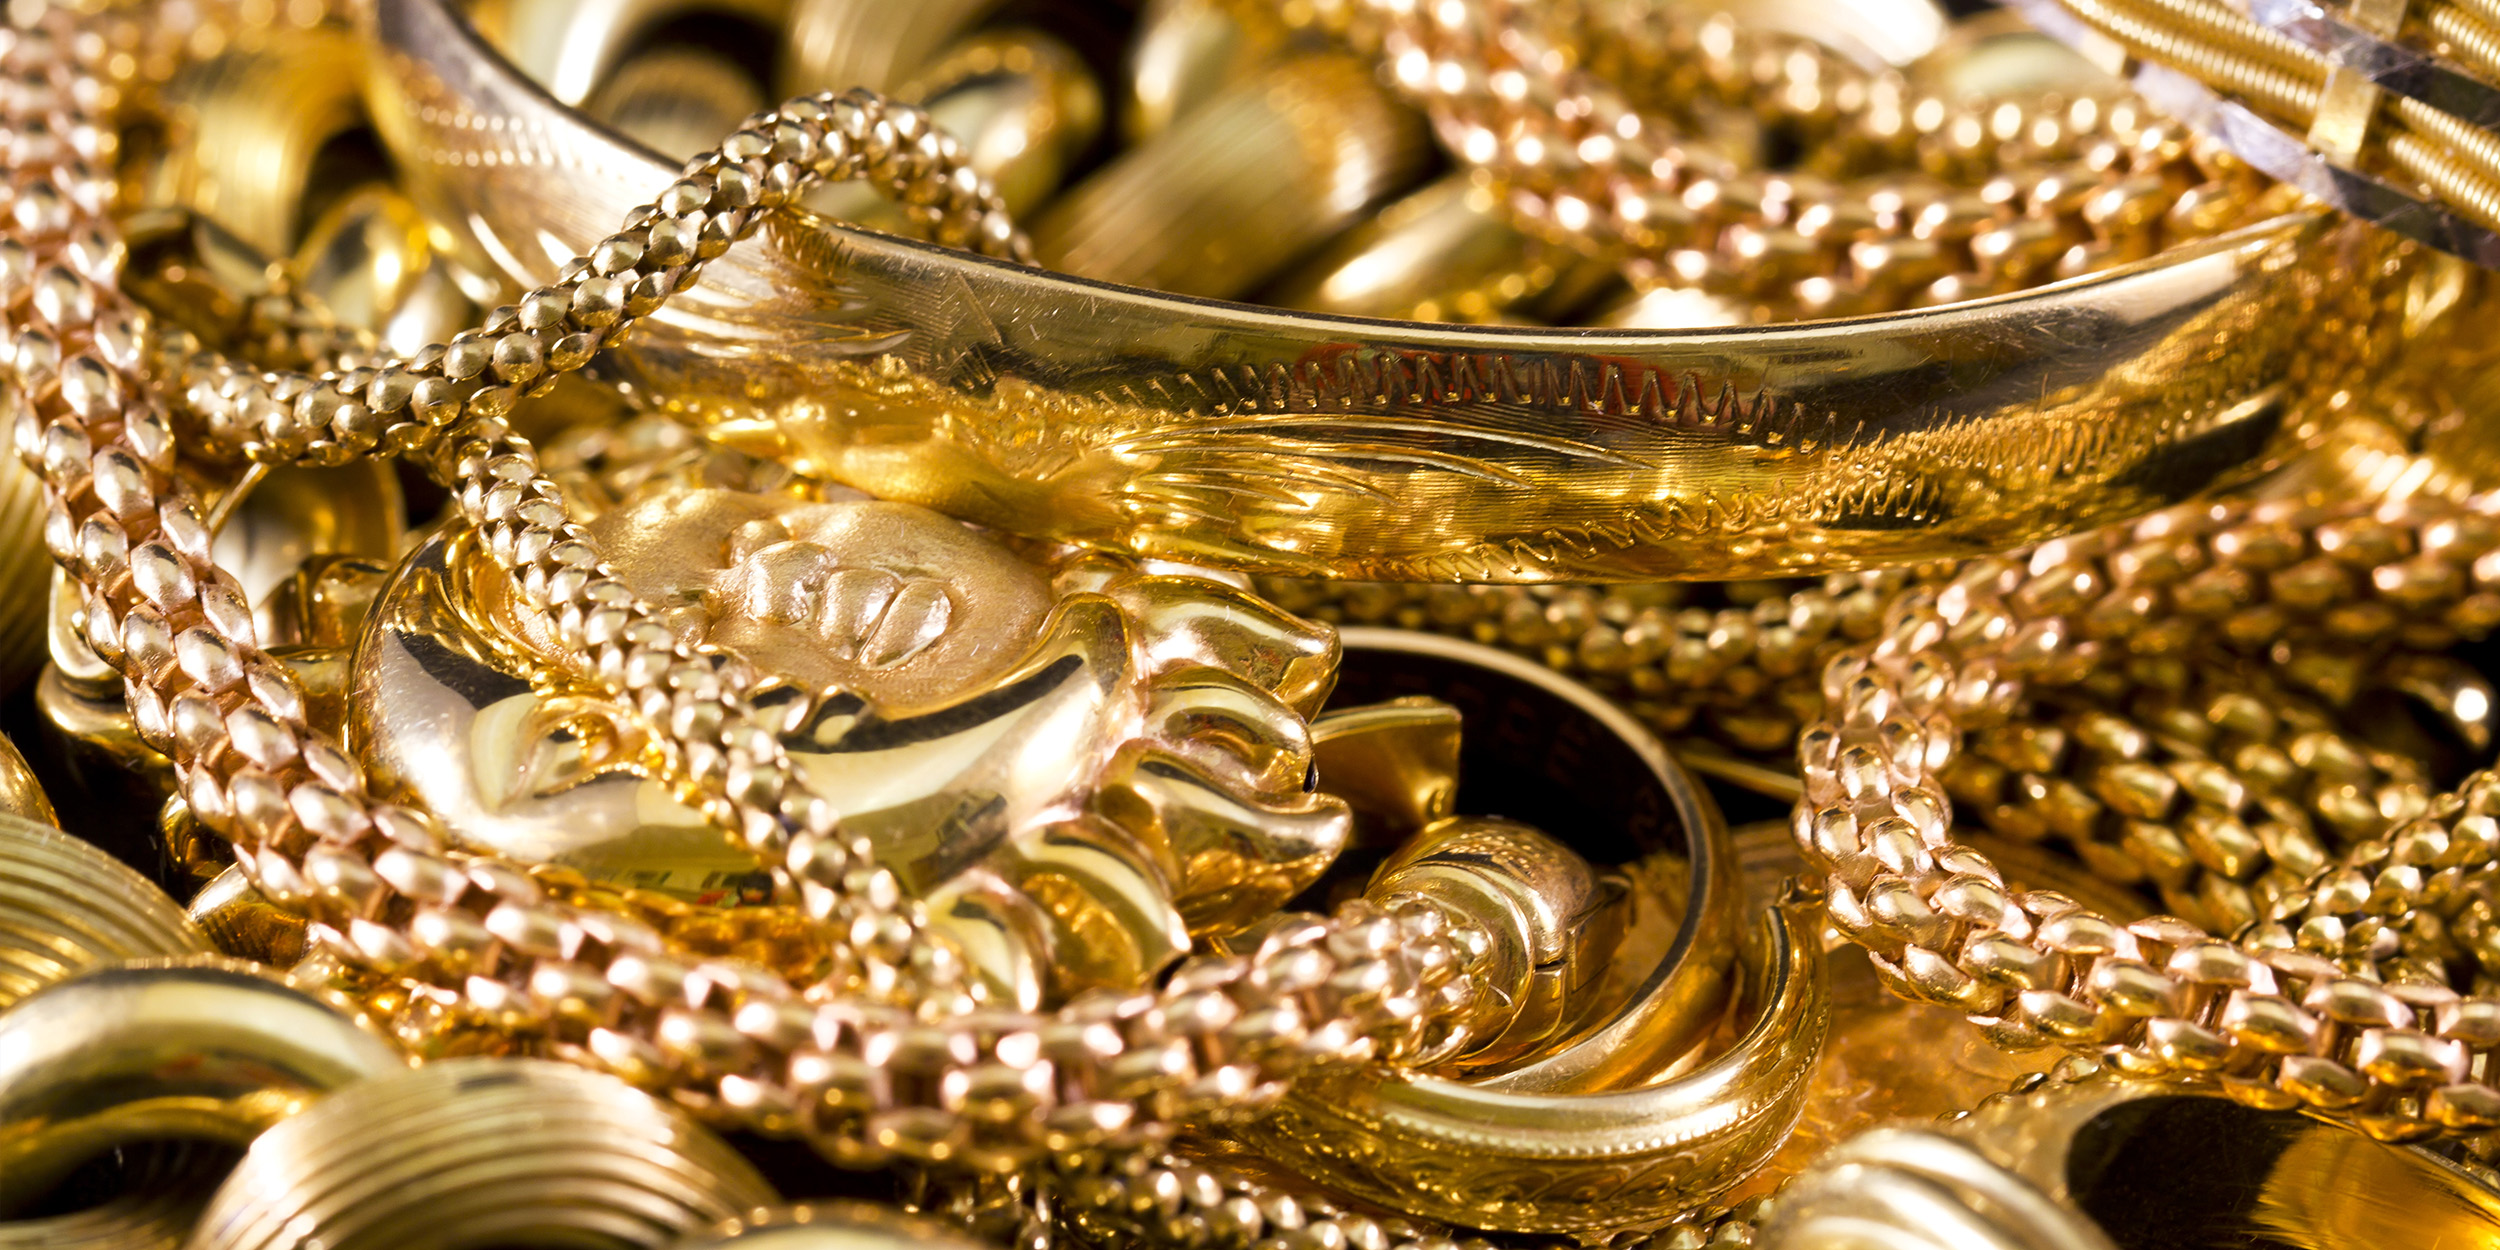 Чистка золотых украшений в домашних условиях: пять проверенных способов